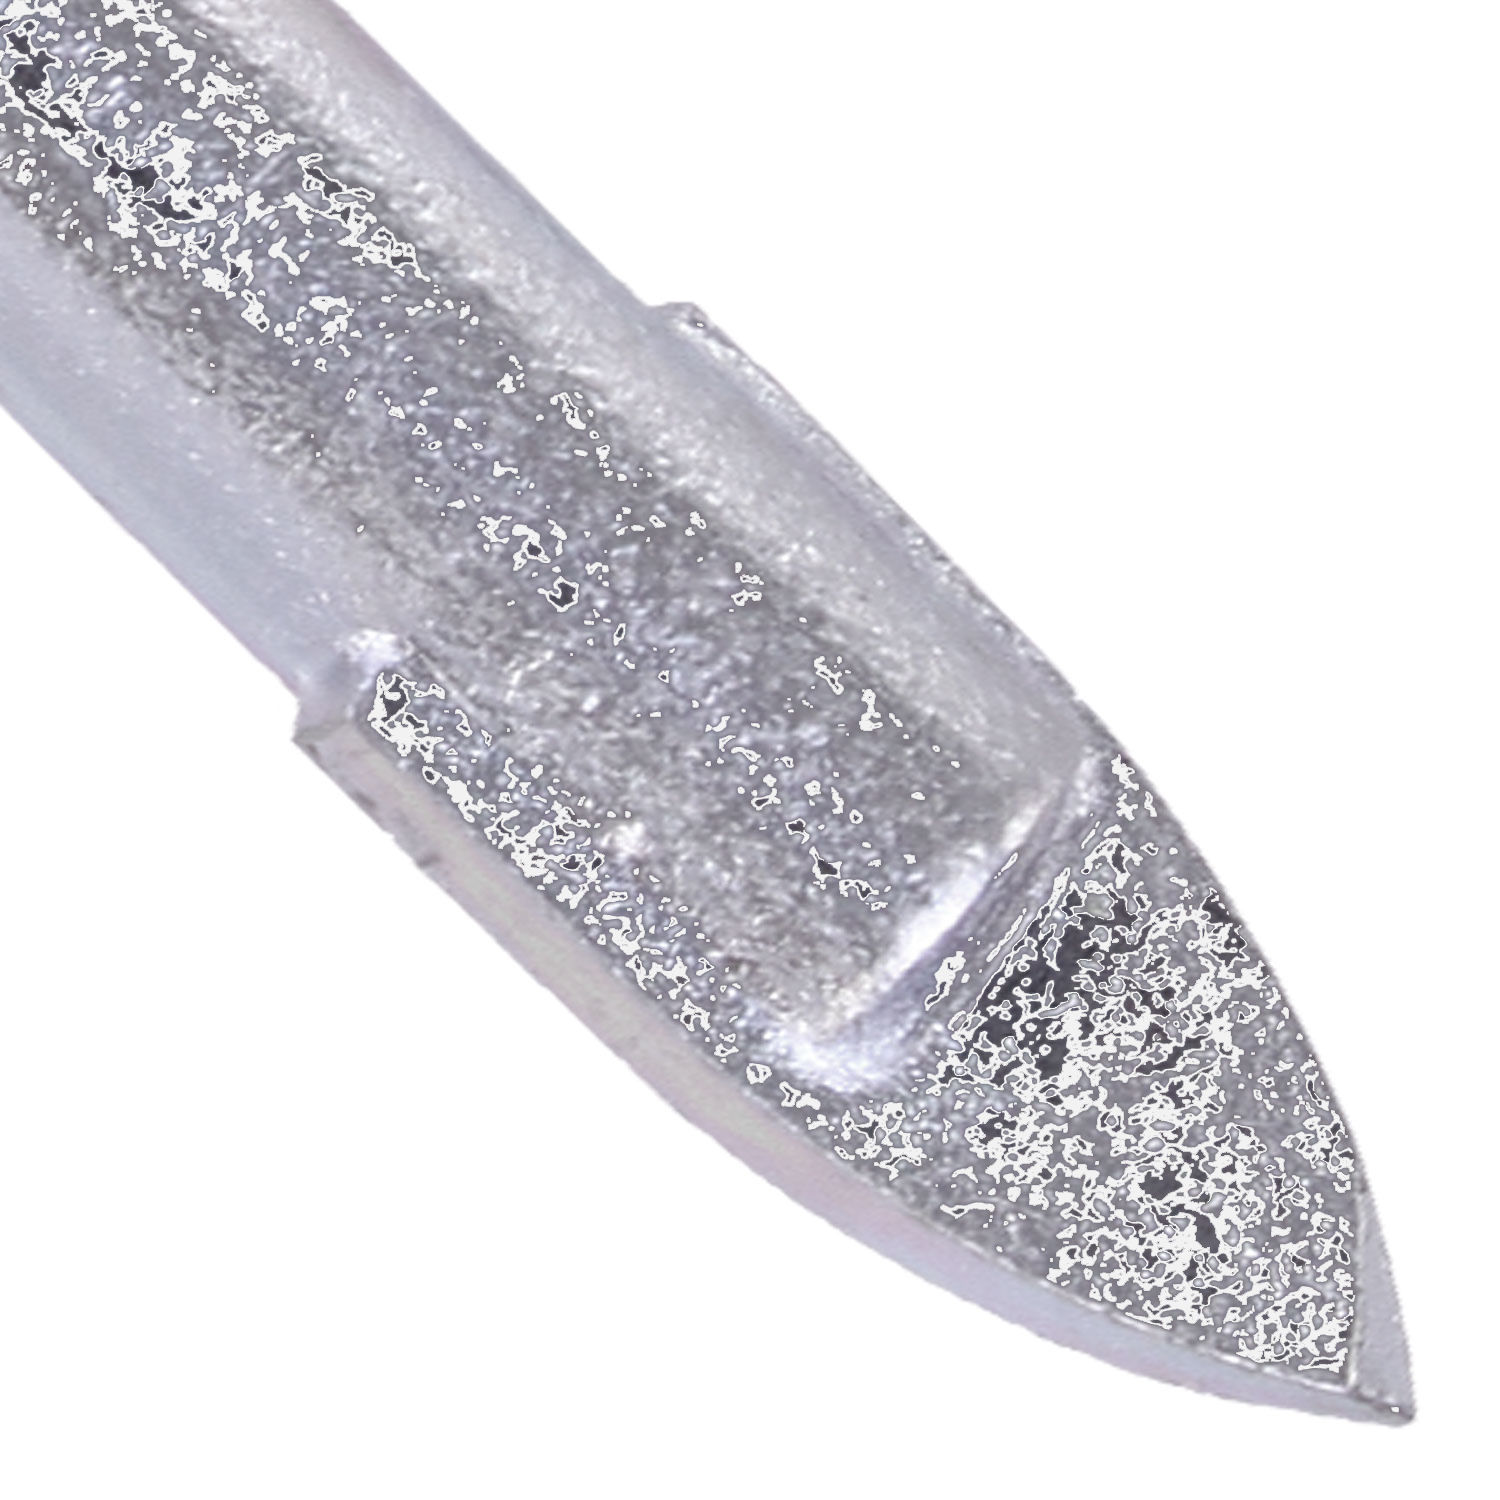 1 KEIL Glasbohrer Ø = 12mm, Länge = 98mm - diamantgeschliffene Hartmetallplatte